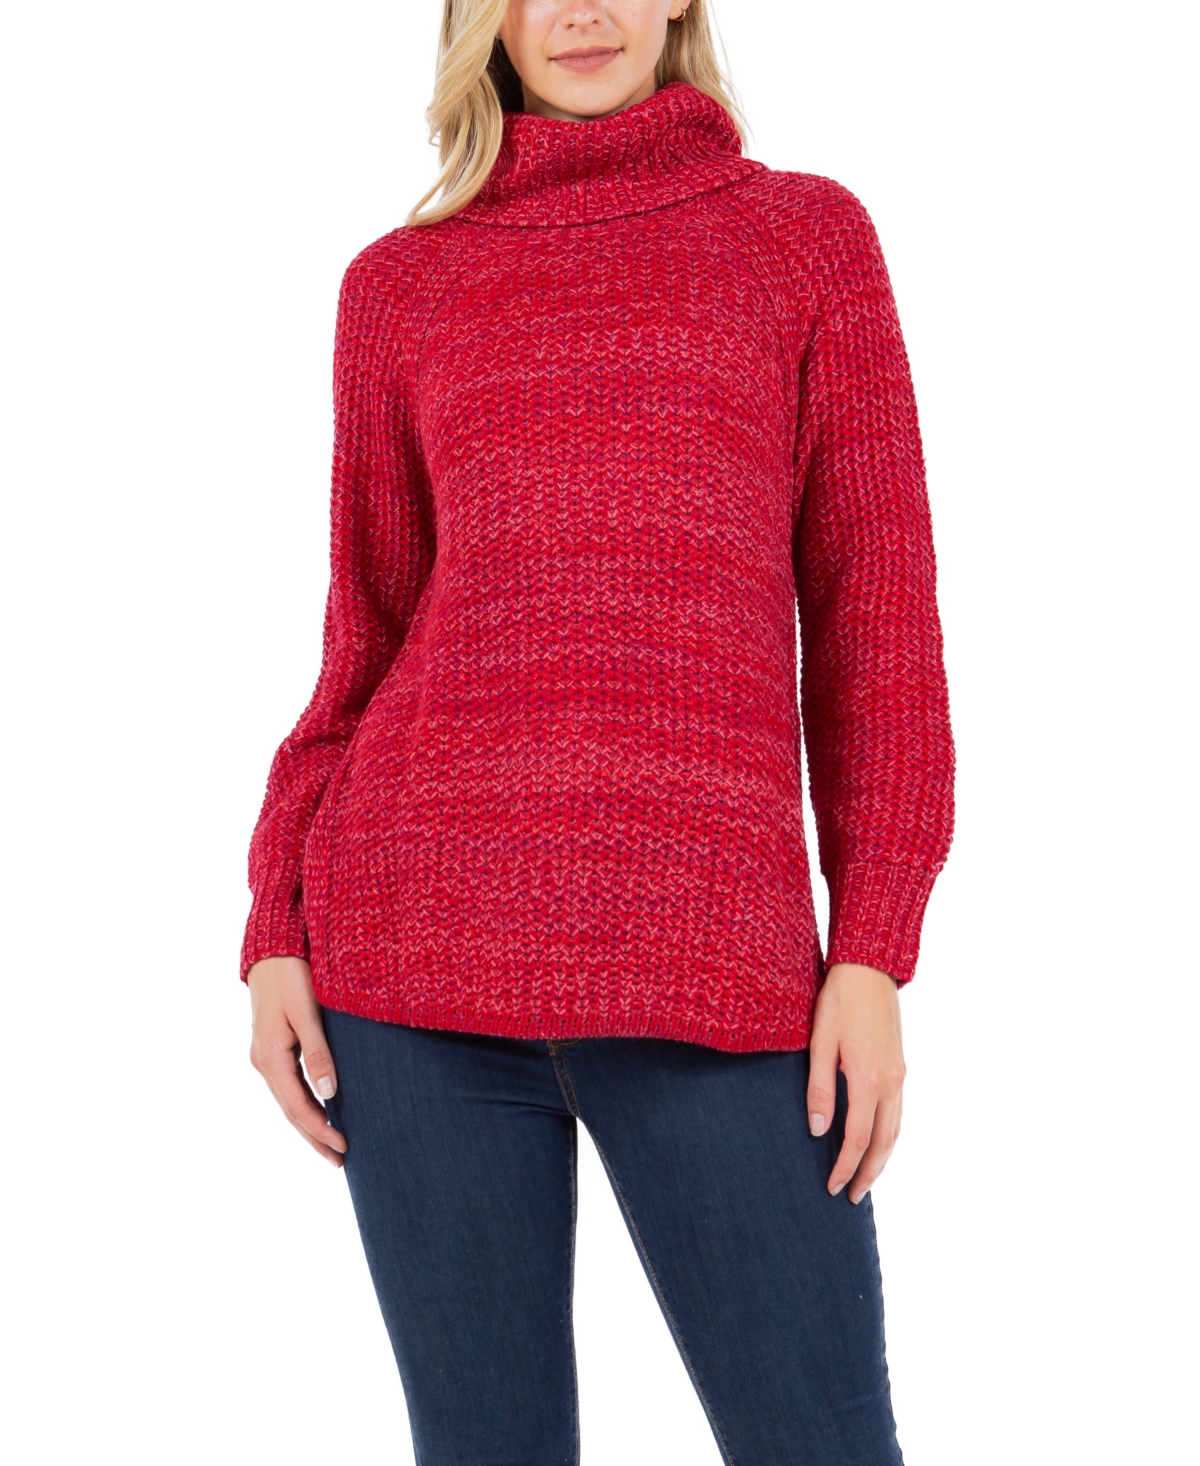 Studio Women's Round Hem Marled Lurex Turtleneck Sweater - Red